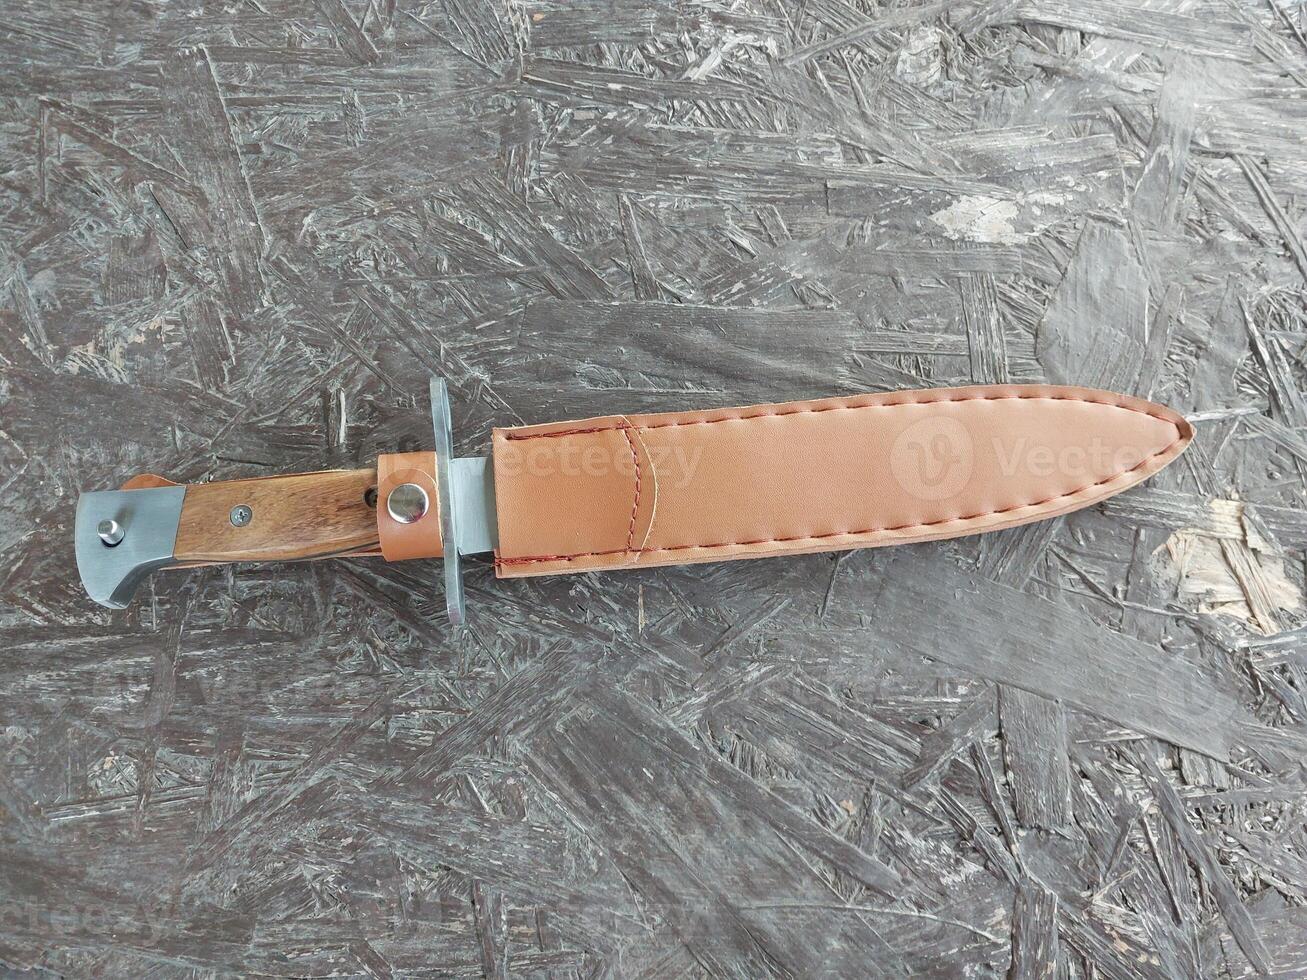 toerist mes varken splitser voor bescherming foto